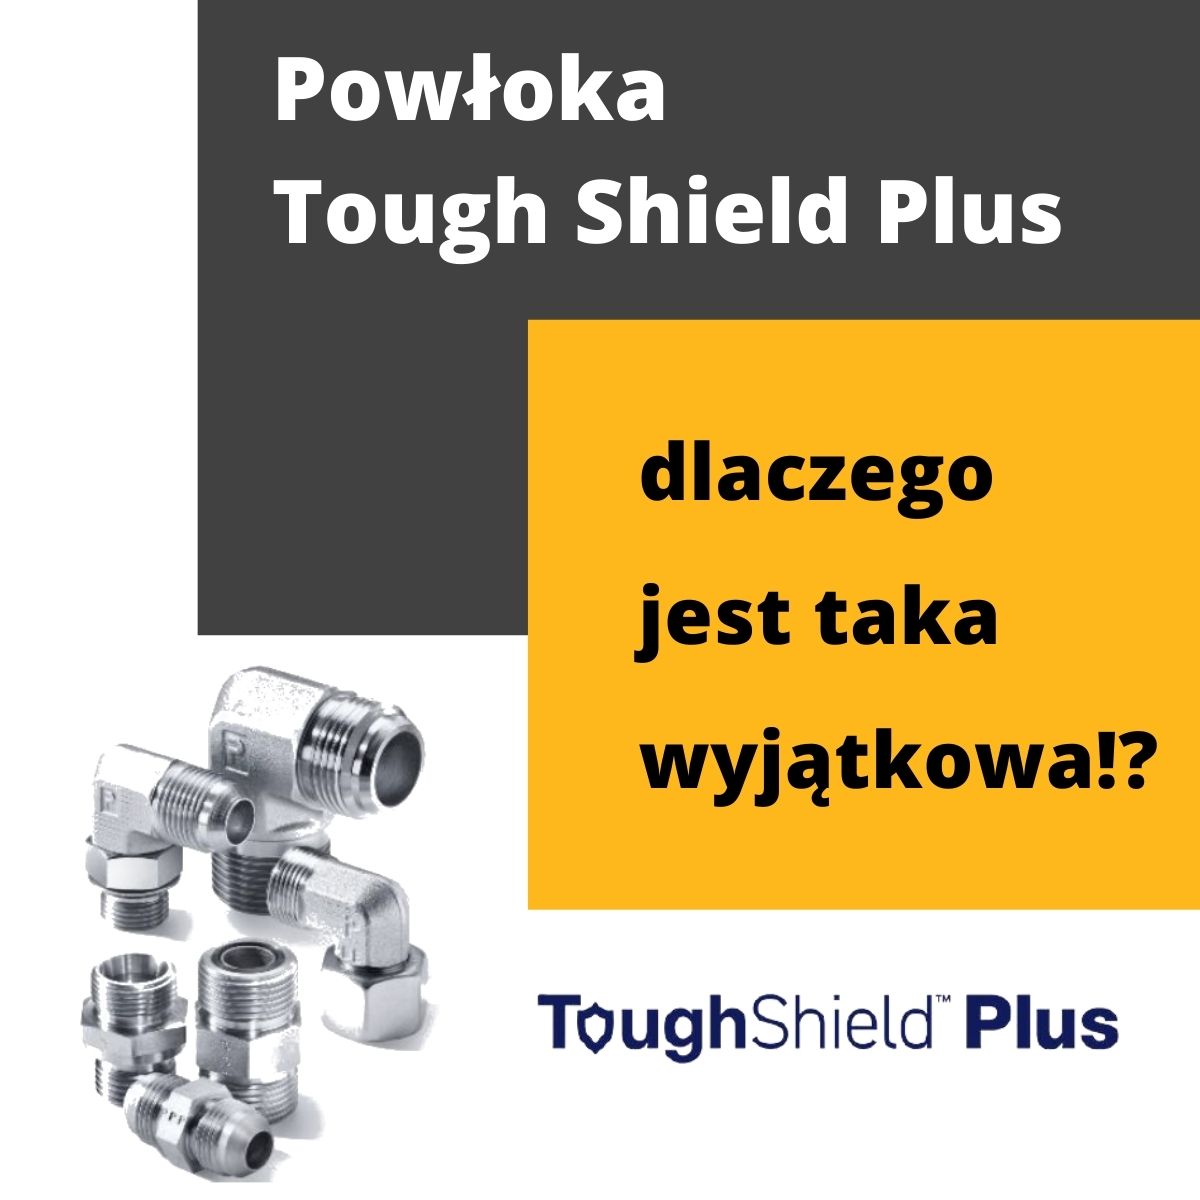 Tough Shield Plus